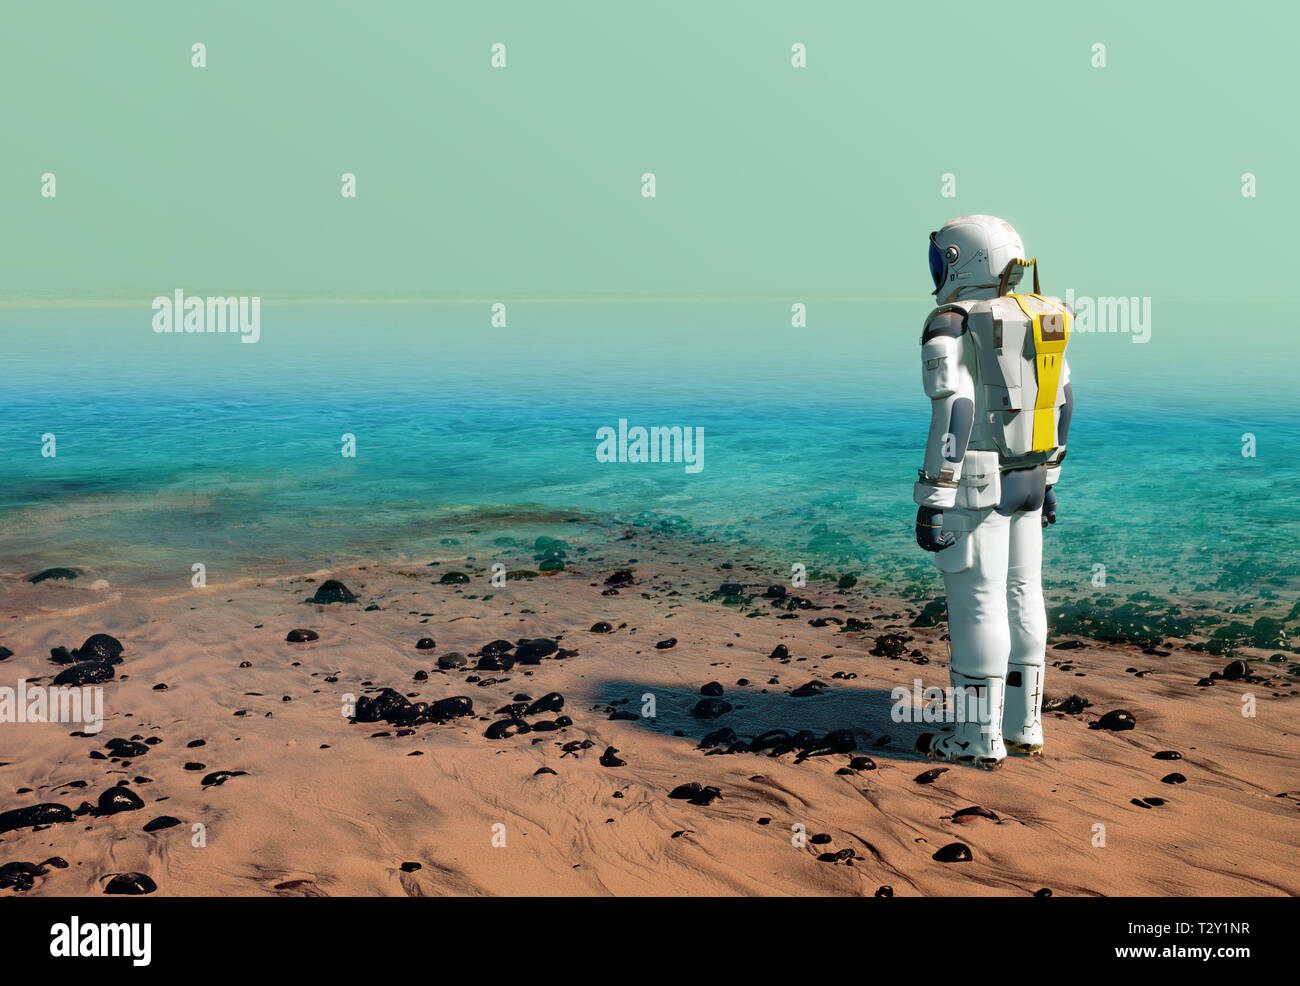 Astronaut am Strand von künstlichen Stausee, See, tragen einen Raumanzug auf dem Mars oder einem anderen Planeten nach dem Terraforming. 3D-Darstellung Stockfoto